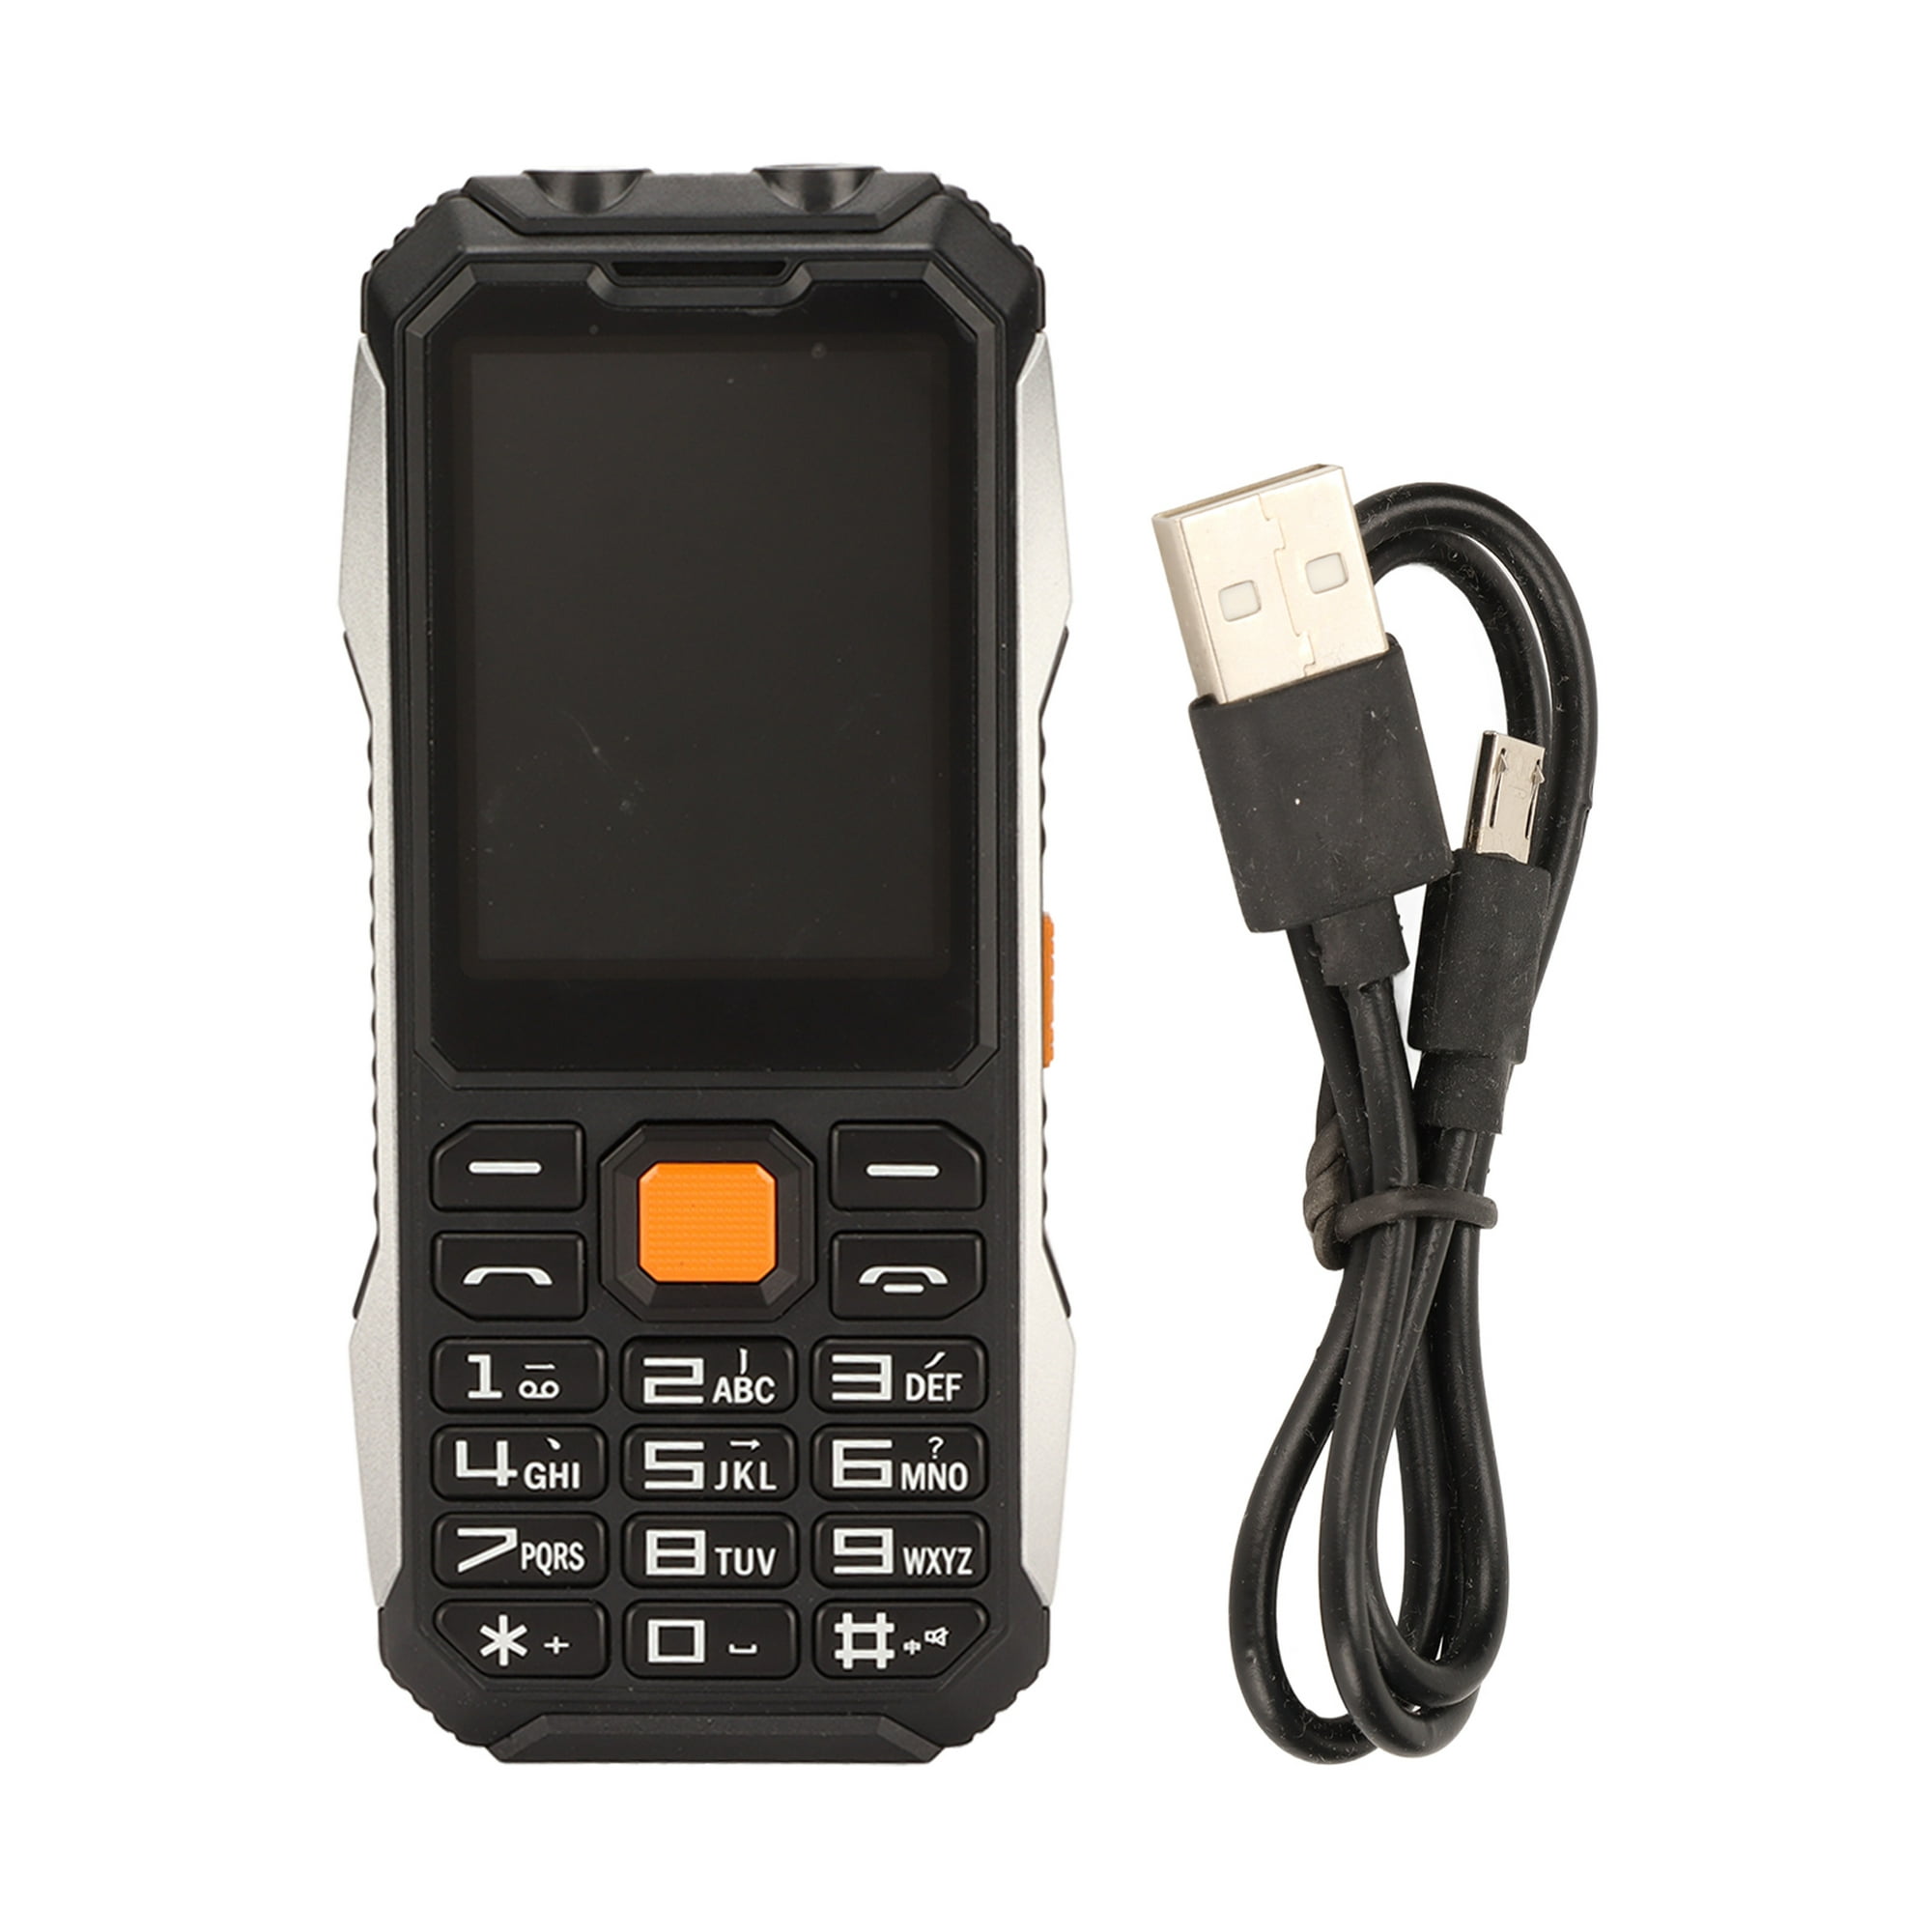 Teléfono móvil, teléfono celular desbloqueado 2G con pantalla HD de 2.4  pulgadas, función SOS, 6800 mAh gran volumen desbloqueado para personas